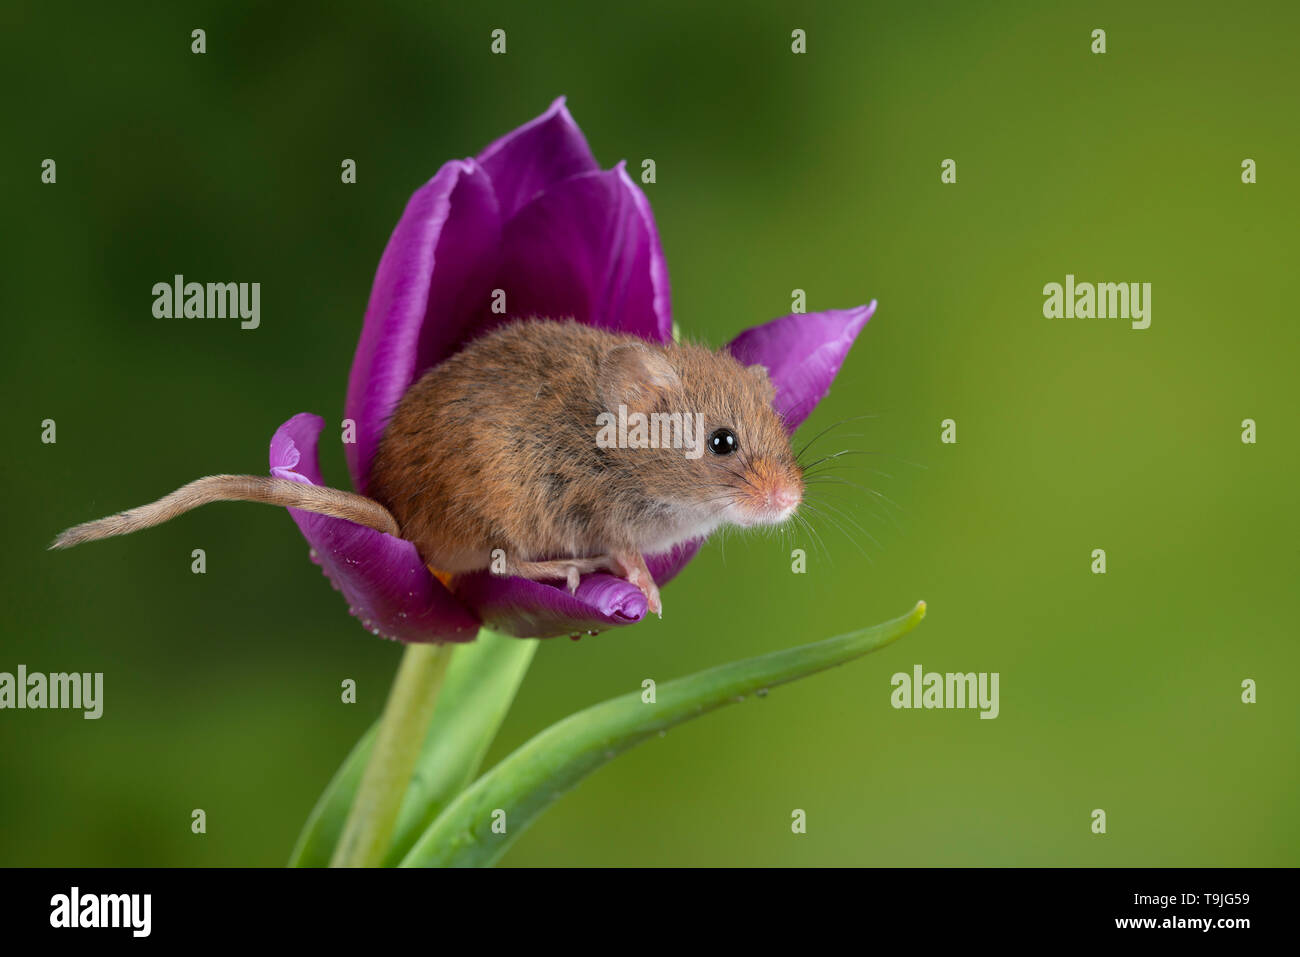 Süße Ernte Mäuse micromys Minutus auf lila Tulpe Blume Laub mit neutralen Grün Natur Hintergrund Stockfoto